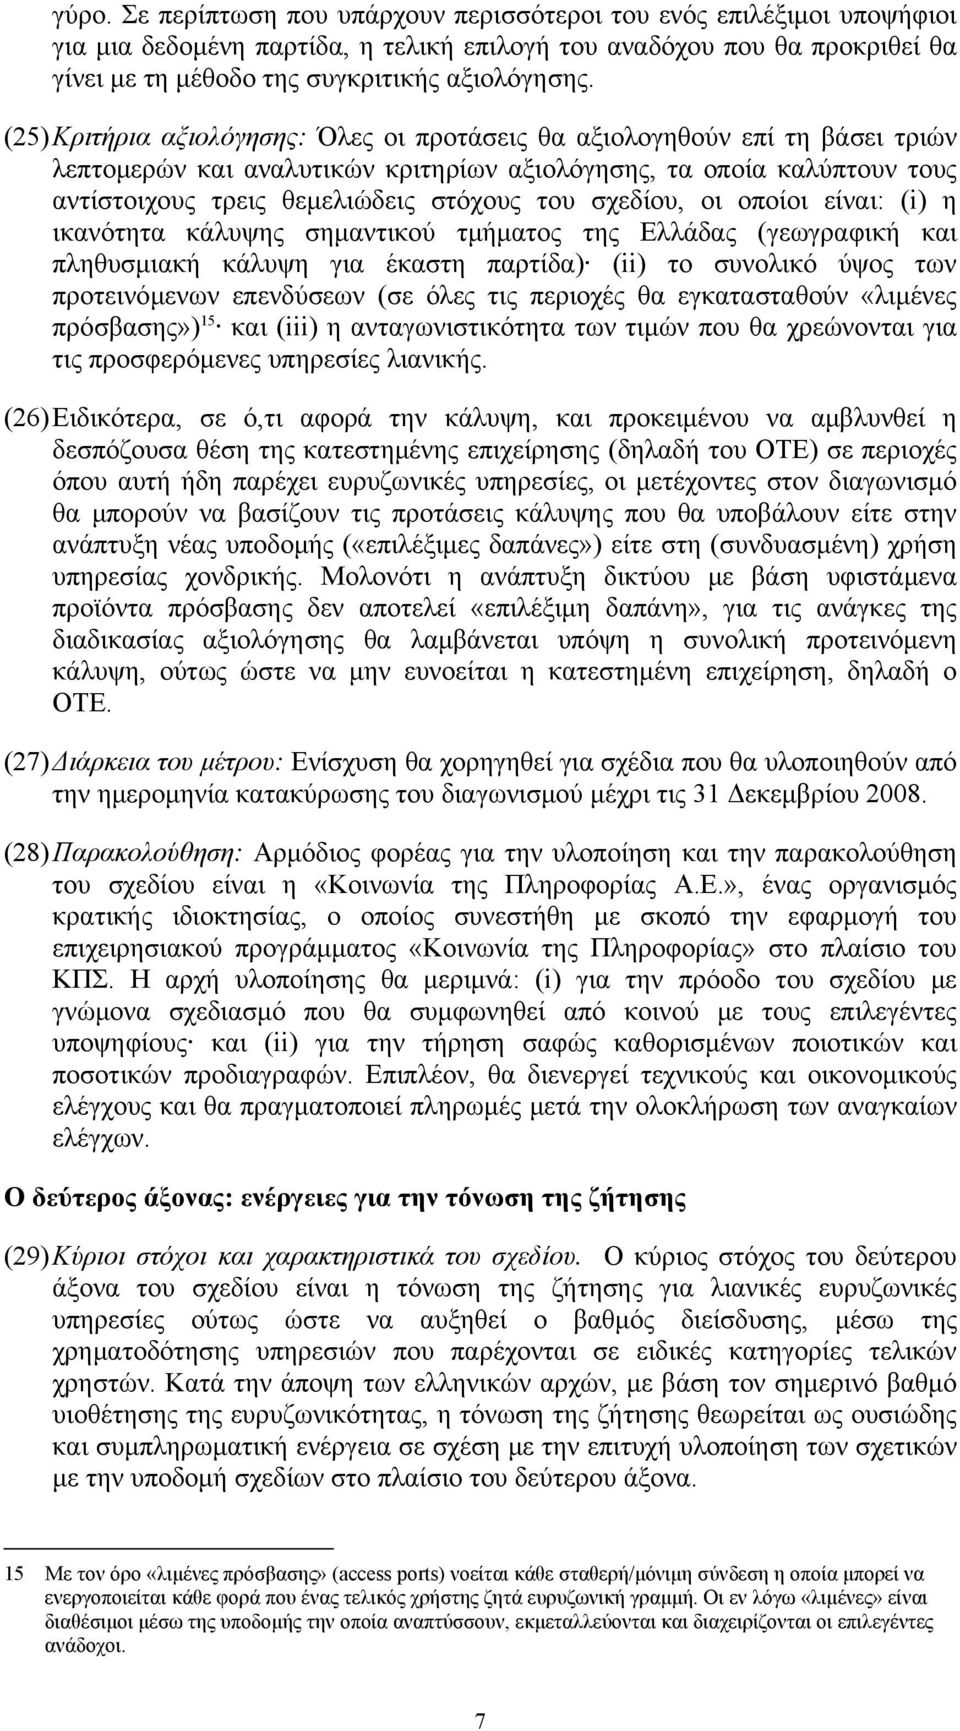 σχεδίου, οι οποίοι είναι: (i) η ικανότητα κάλυψης σημαντικού τμήματος της Ελλάδας (γεωγραφική και πληθυσμιακή κάλυψη για έκαστη παρτίδα) (ii) το συνολικό ύψος των προτεινόμενων επενδύσεων (σε όλες